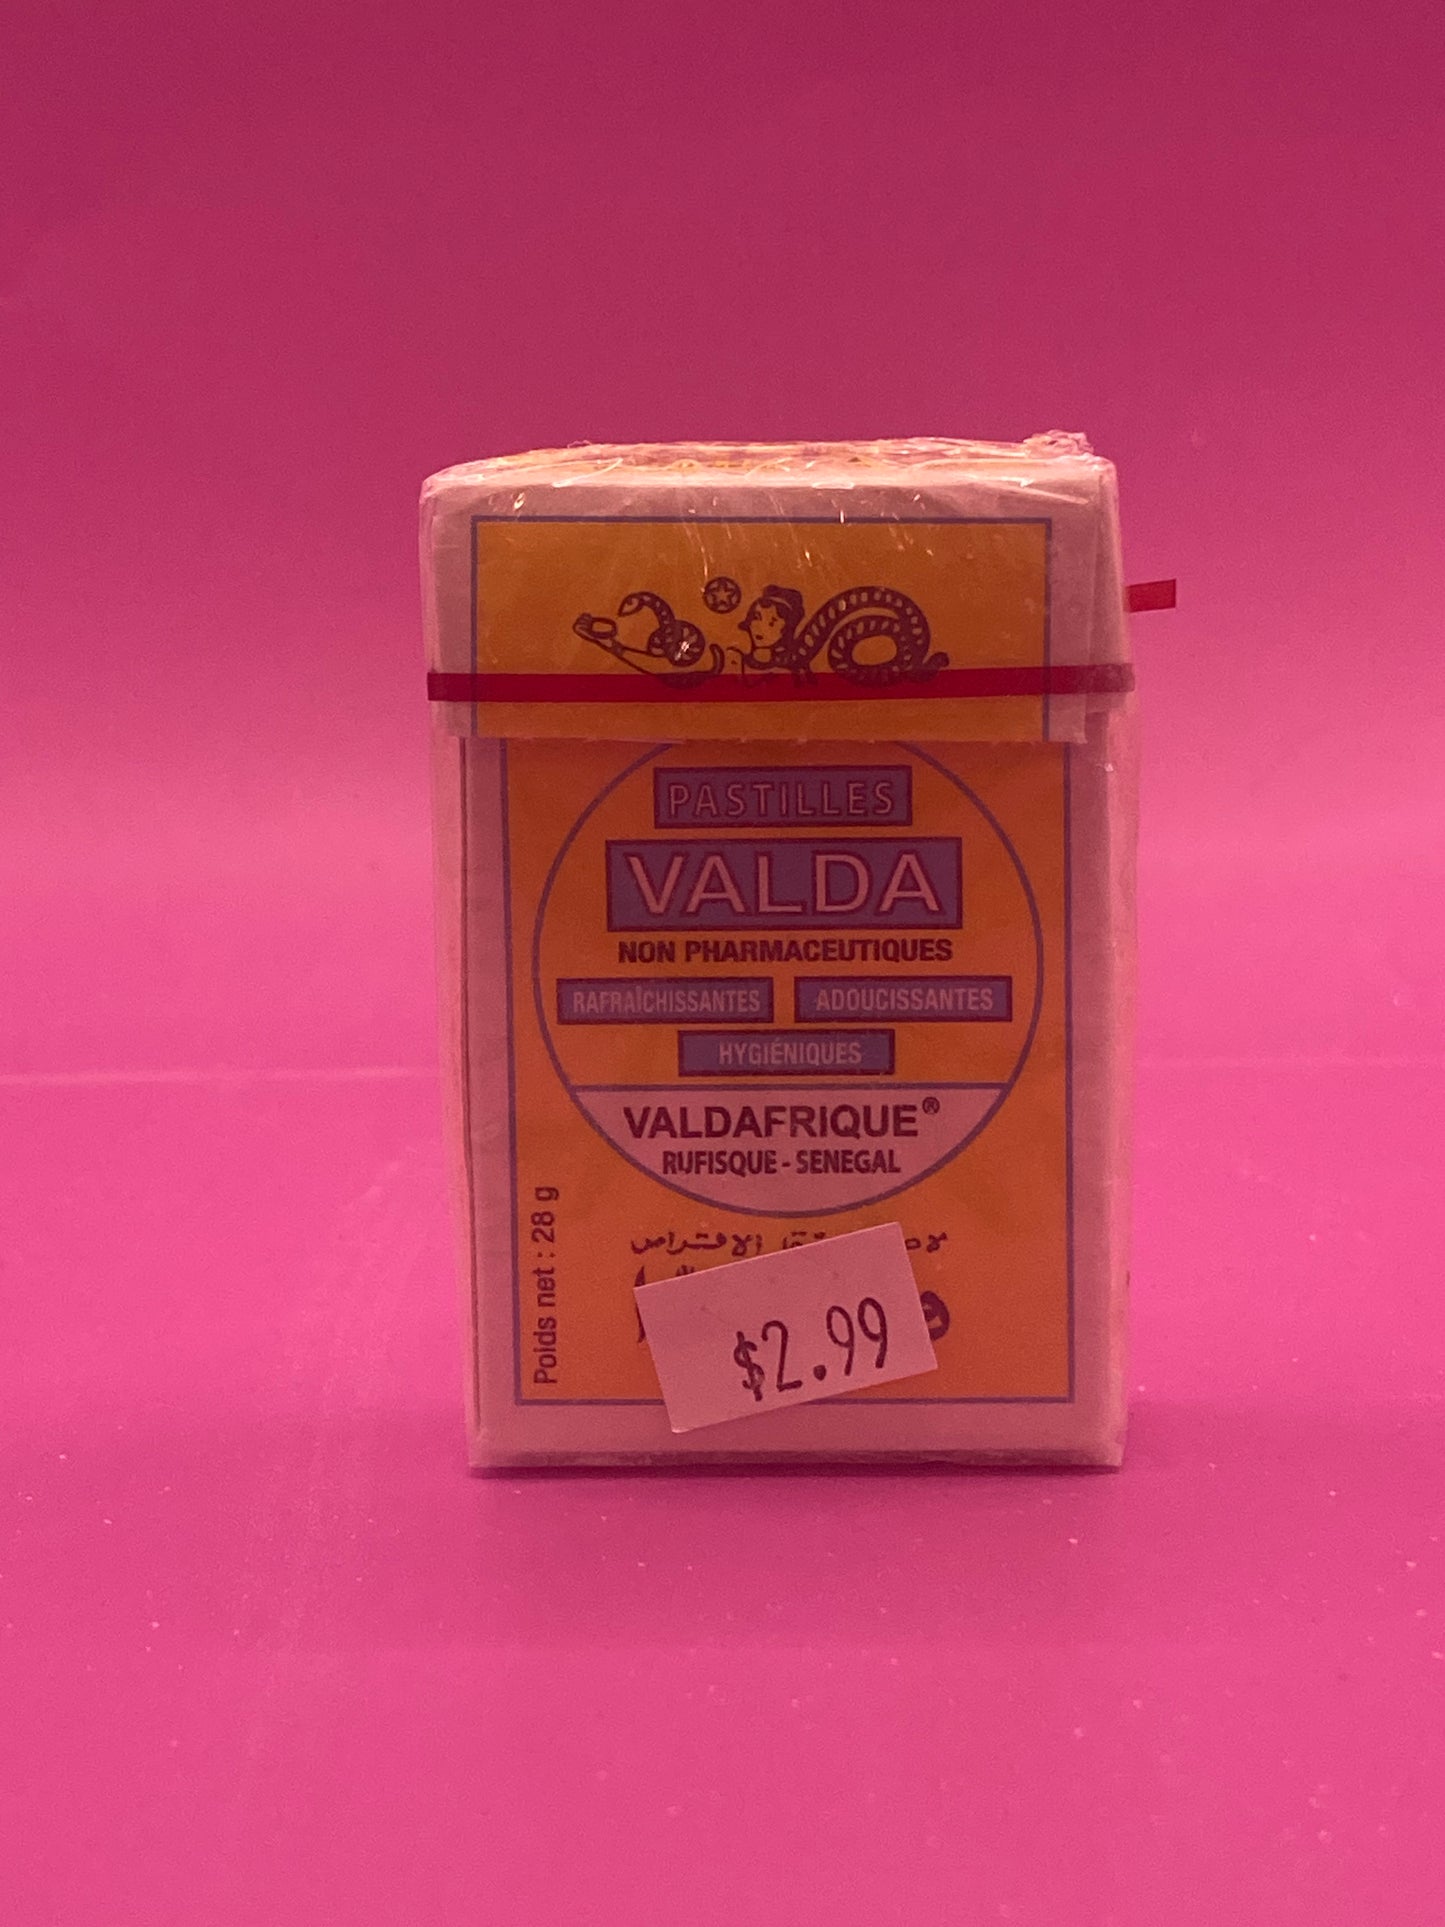 Valda Pastilles Packet 26g